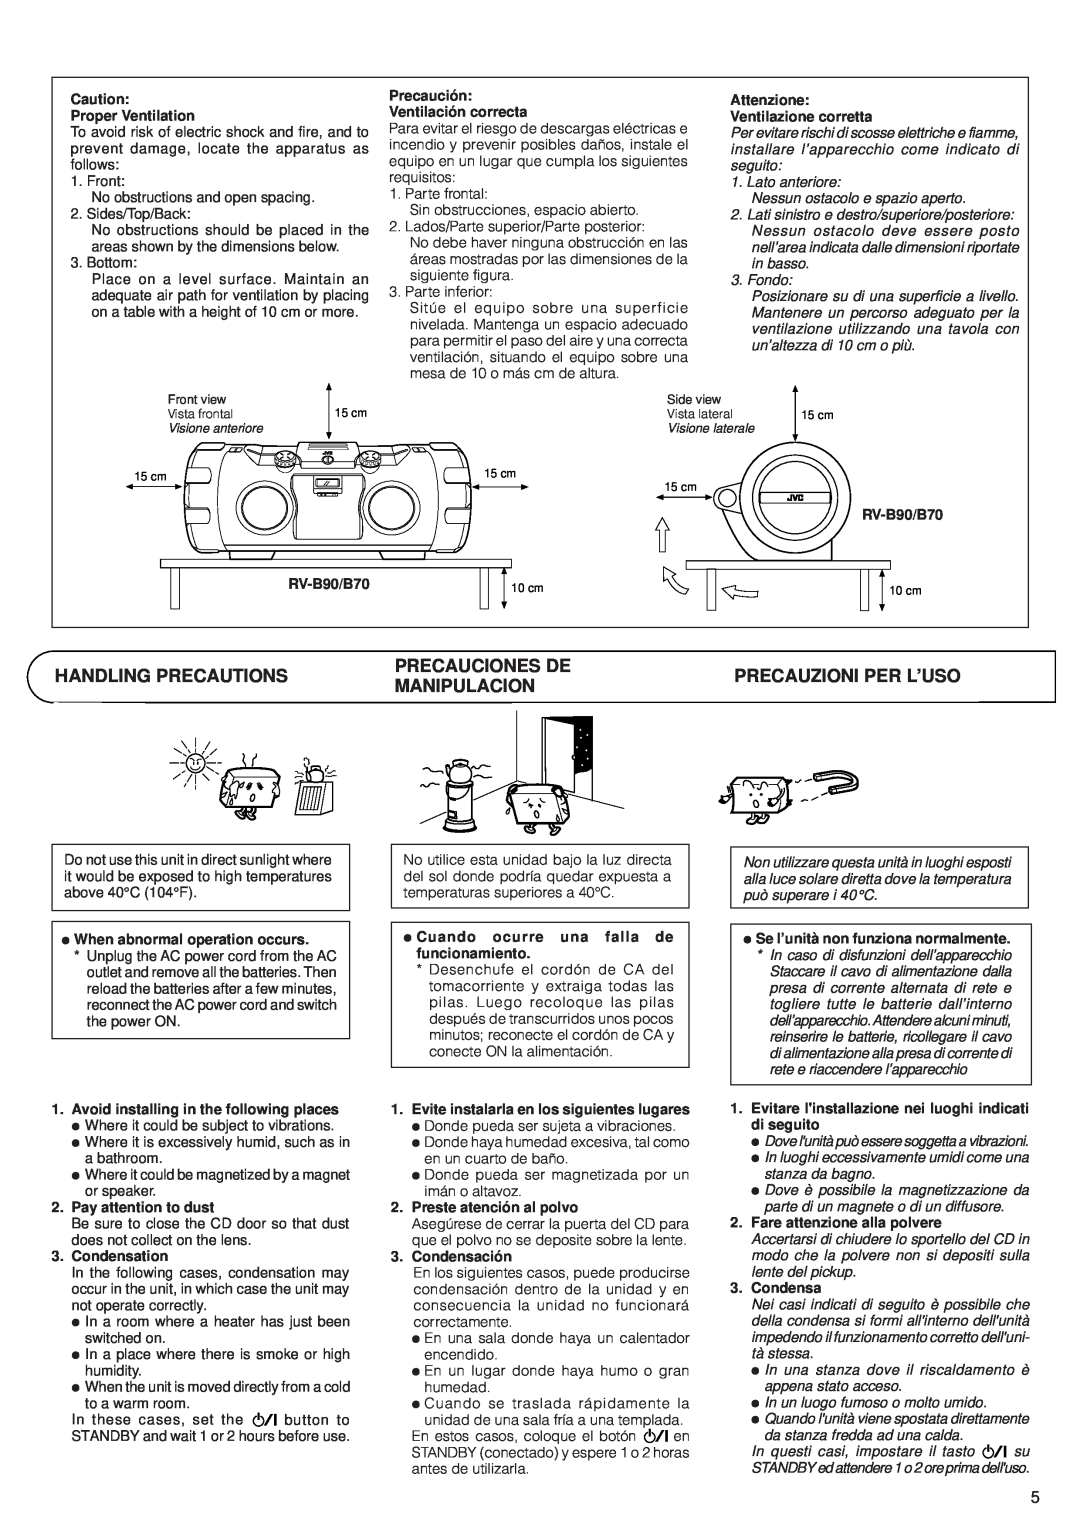 JVC RV-B90, RV-B70 manual Precauciones De 